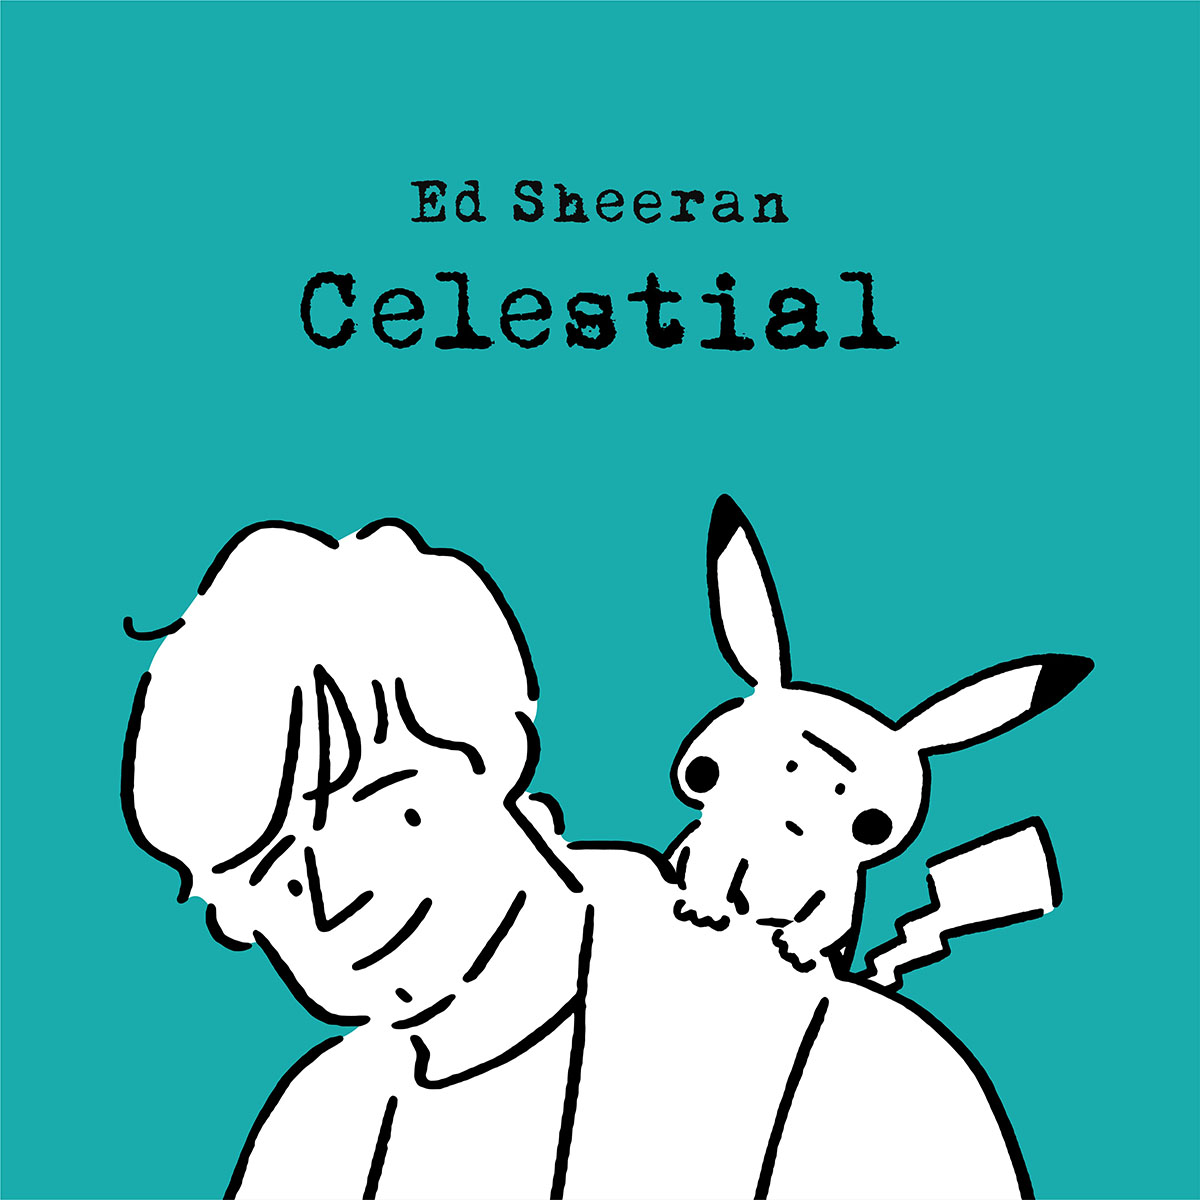 ポケモンとシンガーソングライターのエド・シーランさんがコラボ。スペシャルミュージックビデオ「Celestial」の本編が日本時間9月30日に公開へポケモンとシンガーソングライターのエド・シーランさんがコラボ。スペシャルミュージックビデオ「Celestial」の本編が日本時間9月30日に公開へ